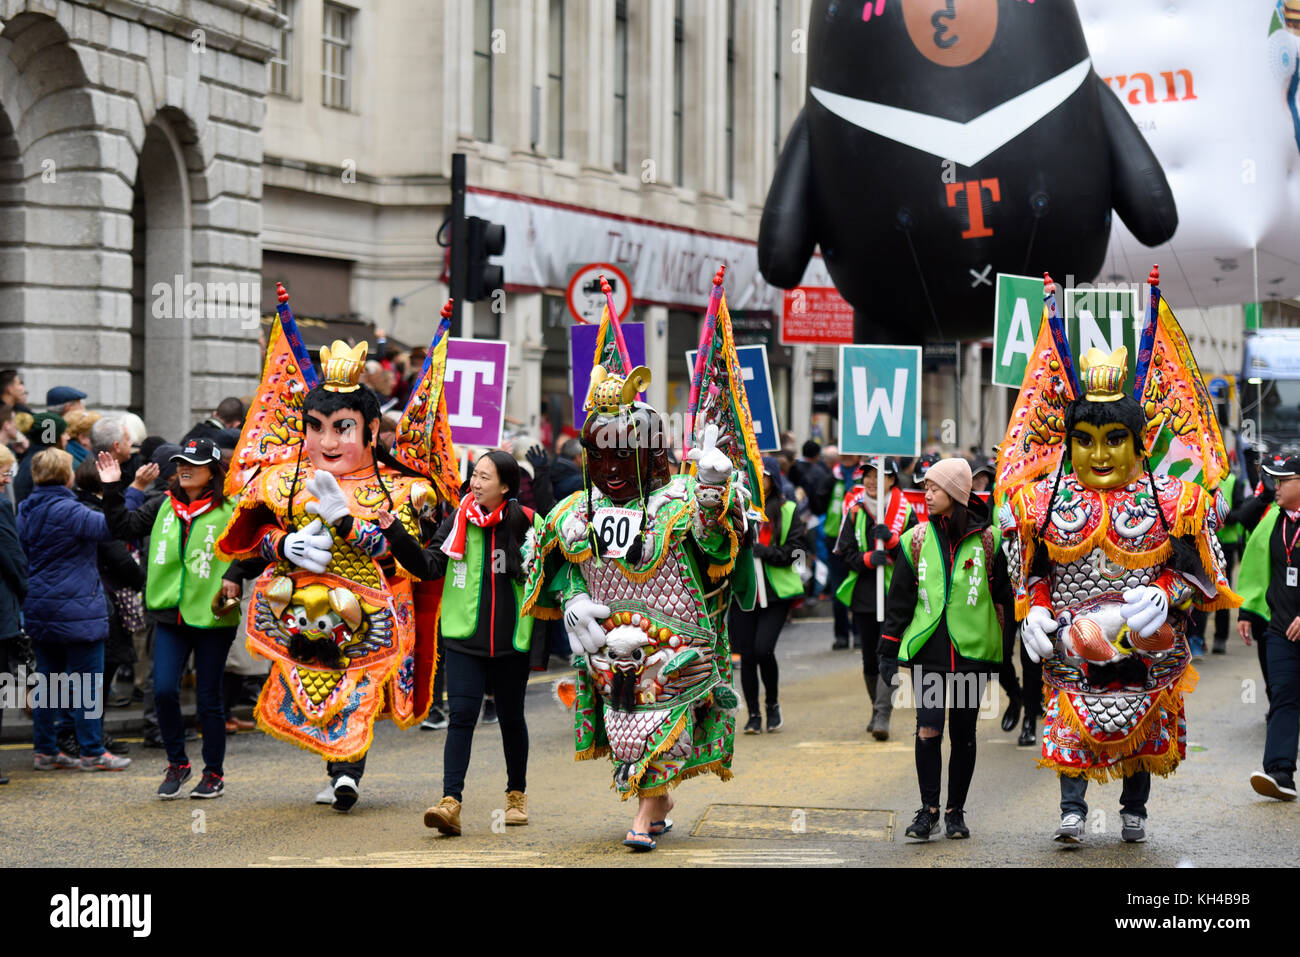 COMMUNAUTÉ TAÏWANAISE D'OUTRE-MER au Royaume-Uni à la parade de procession du Lord Mayor le long de Cheapside, Londres Banque D'Images